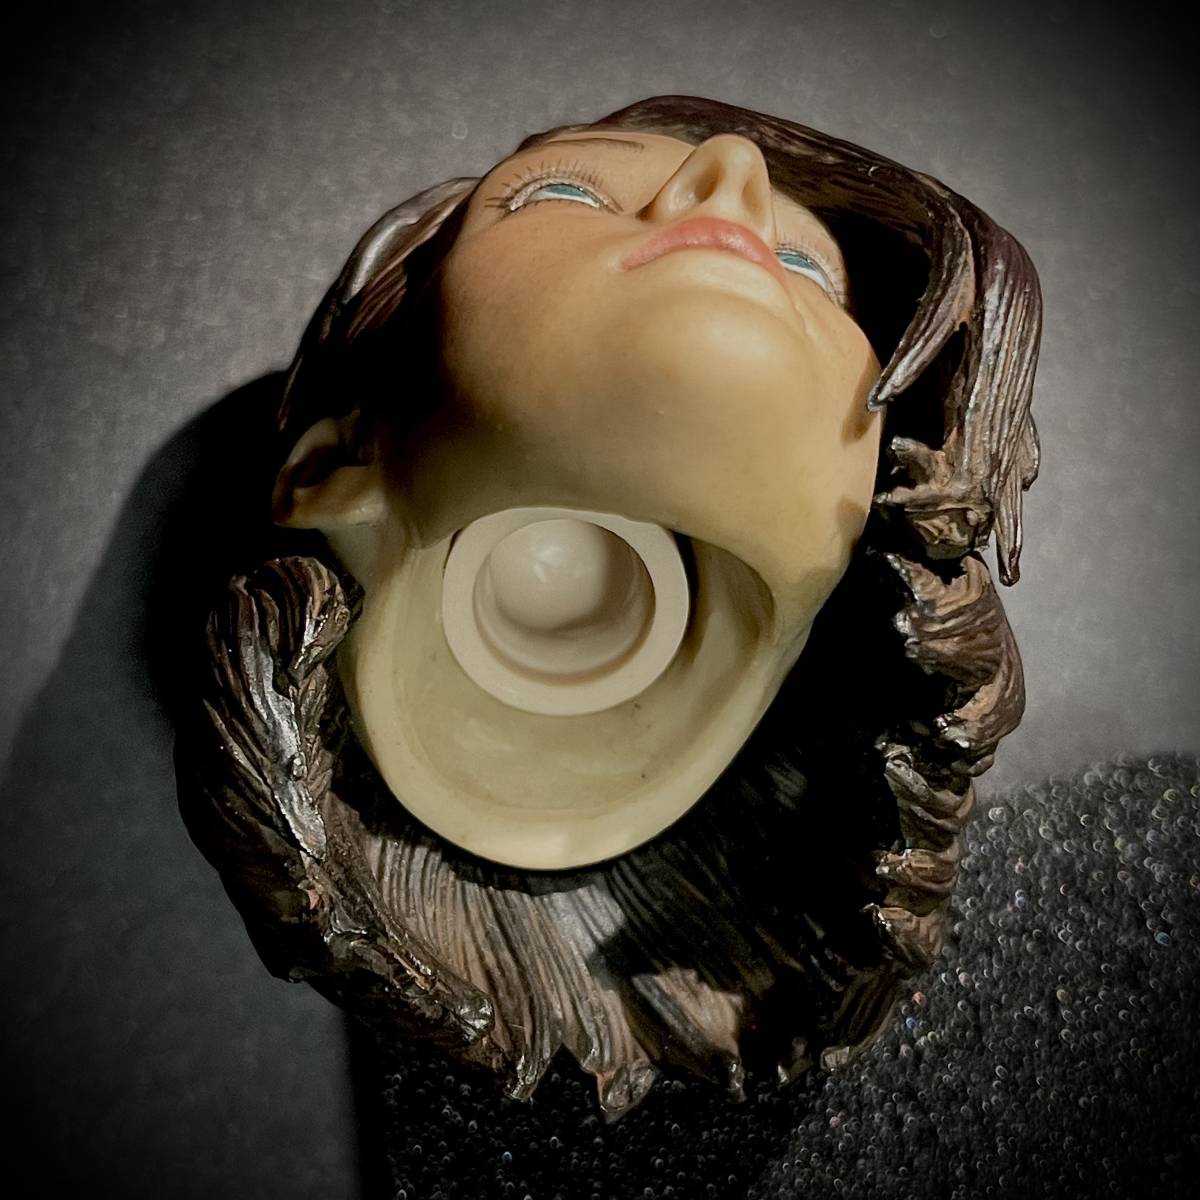 【値上げ予定】 DAFTOYS製 模型 1/6 スケール フィギュア用 部品 美人 美女 女性 ヘッド 頭 頭部 コネクター付き (未使用の画像6